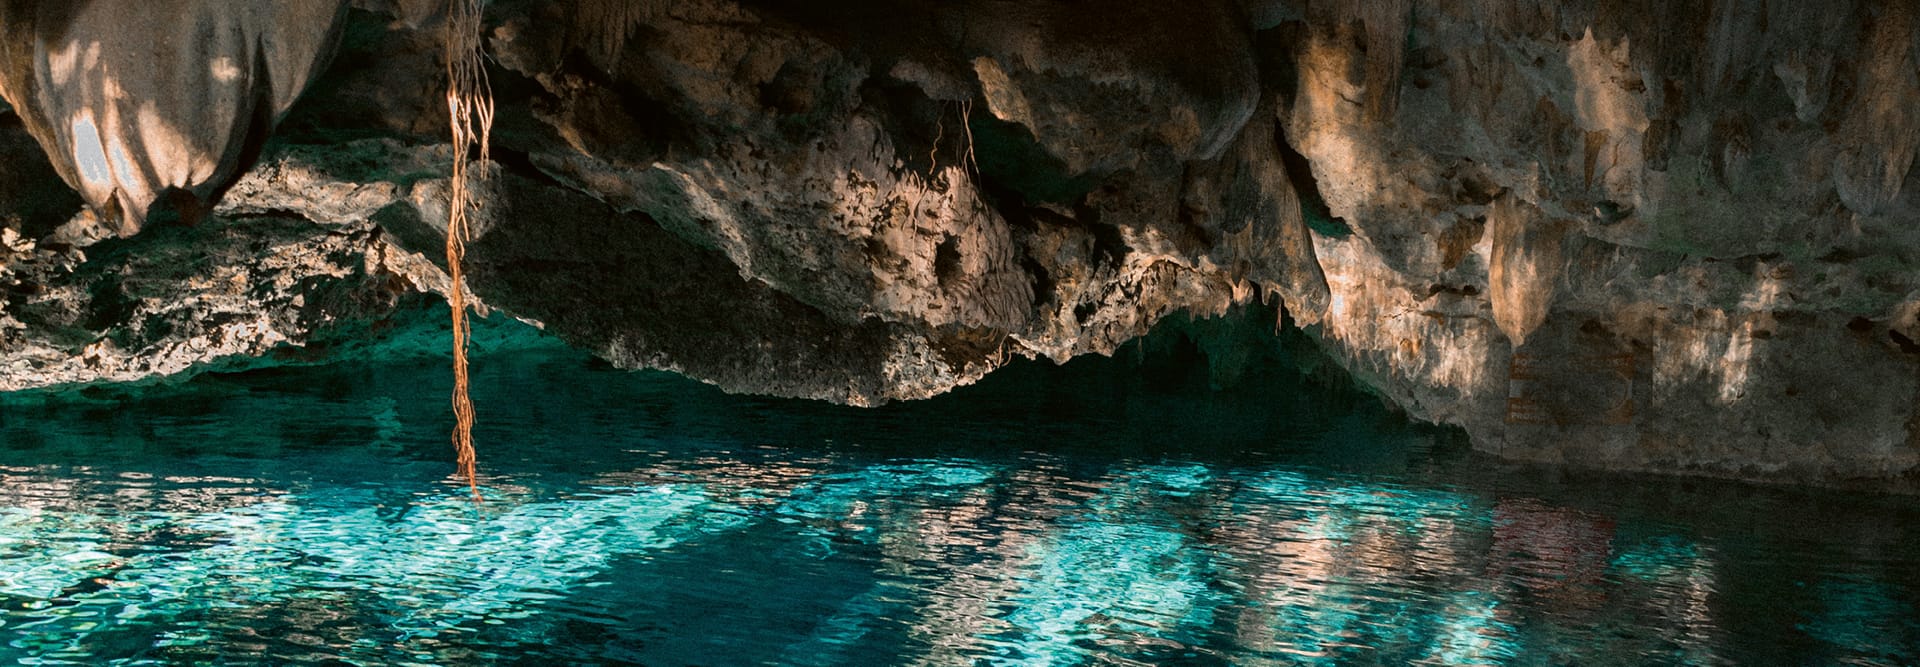 Unterirdischer See in einer Grotte